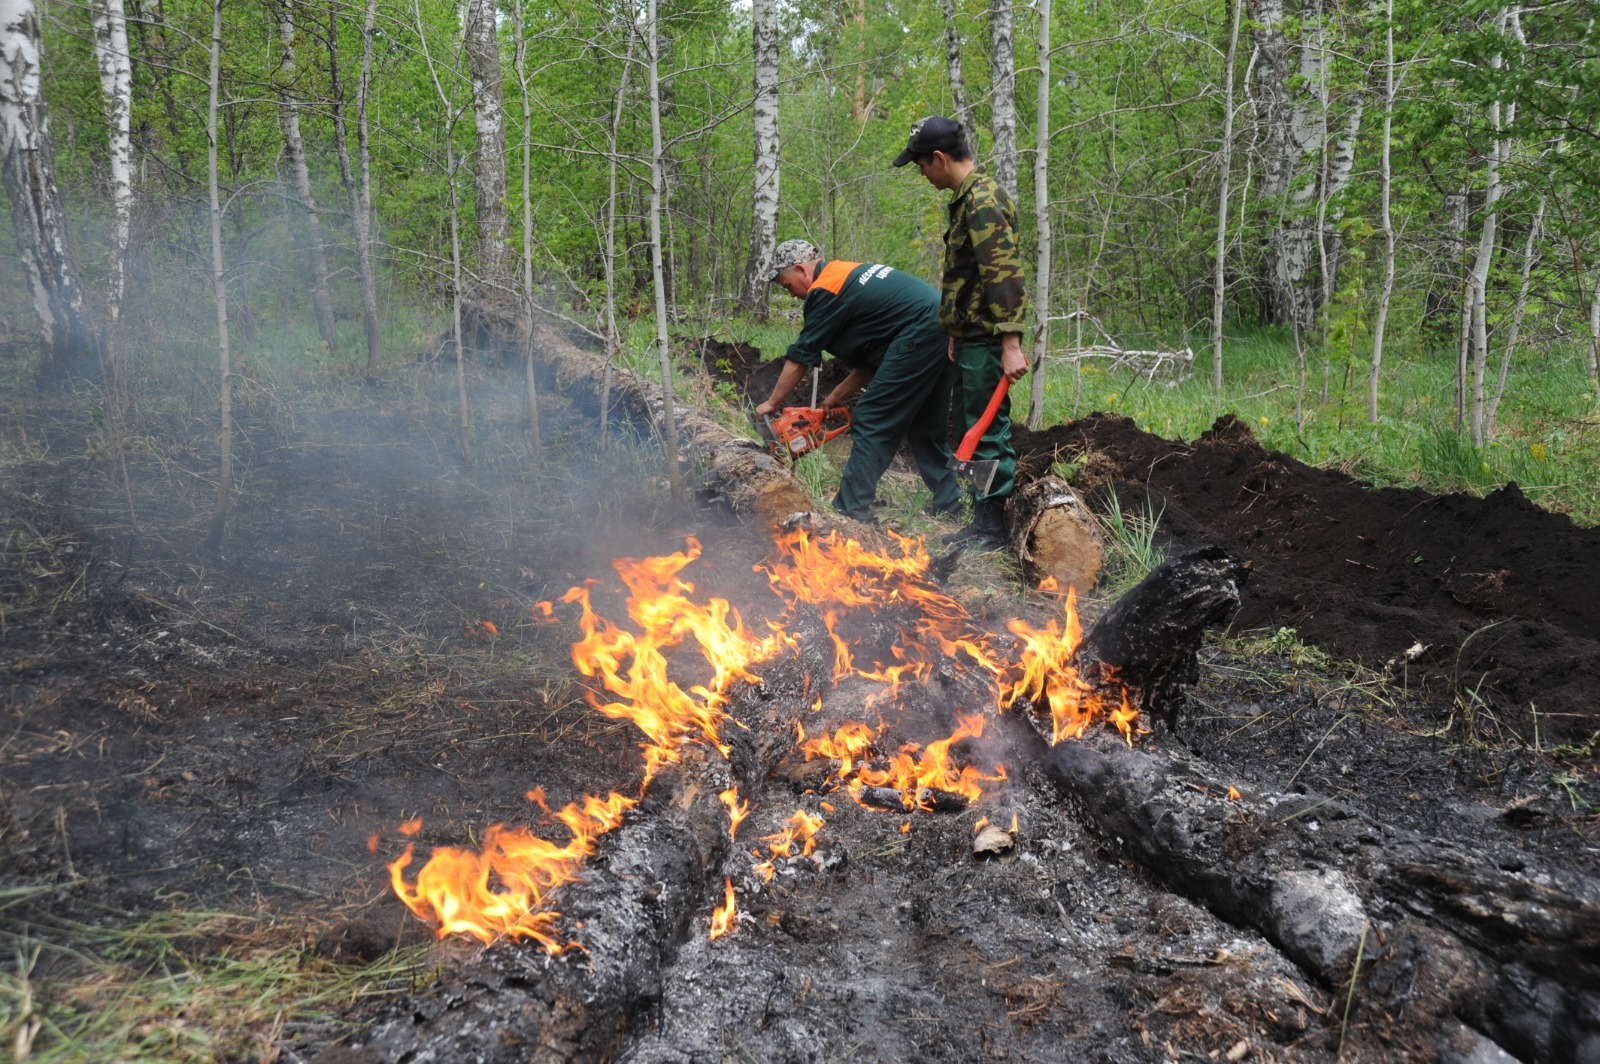 Ринат РАЗАПОВ  Министерство лесного хозяйства: В Башкирии начался пожароопасный сезон